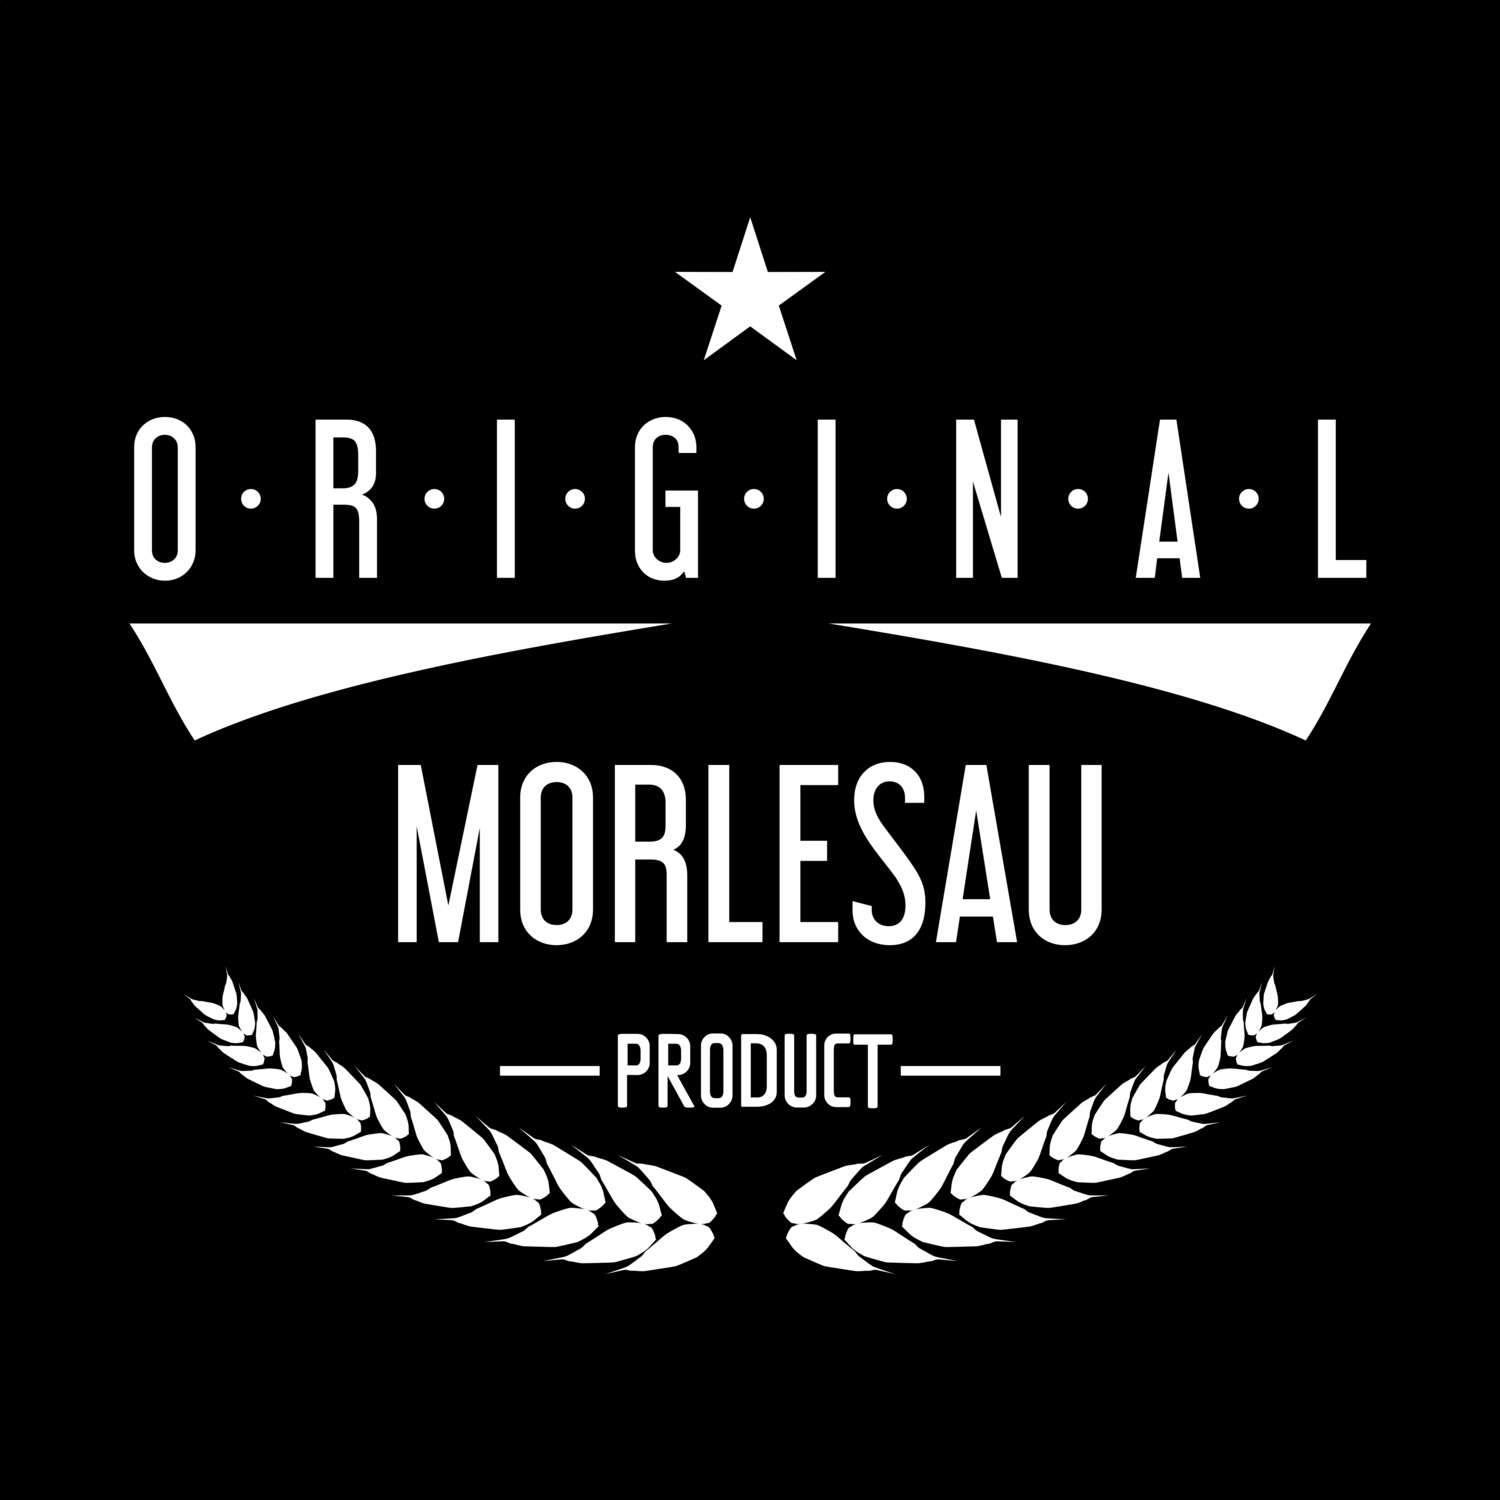 Morlesau T-Shirt »Original Product«